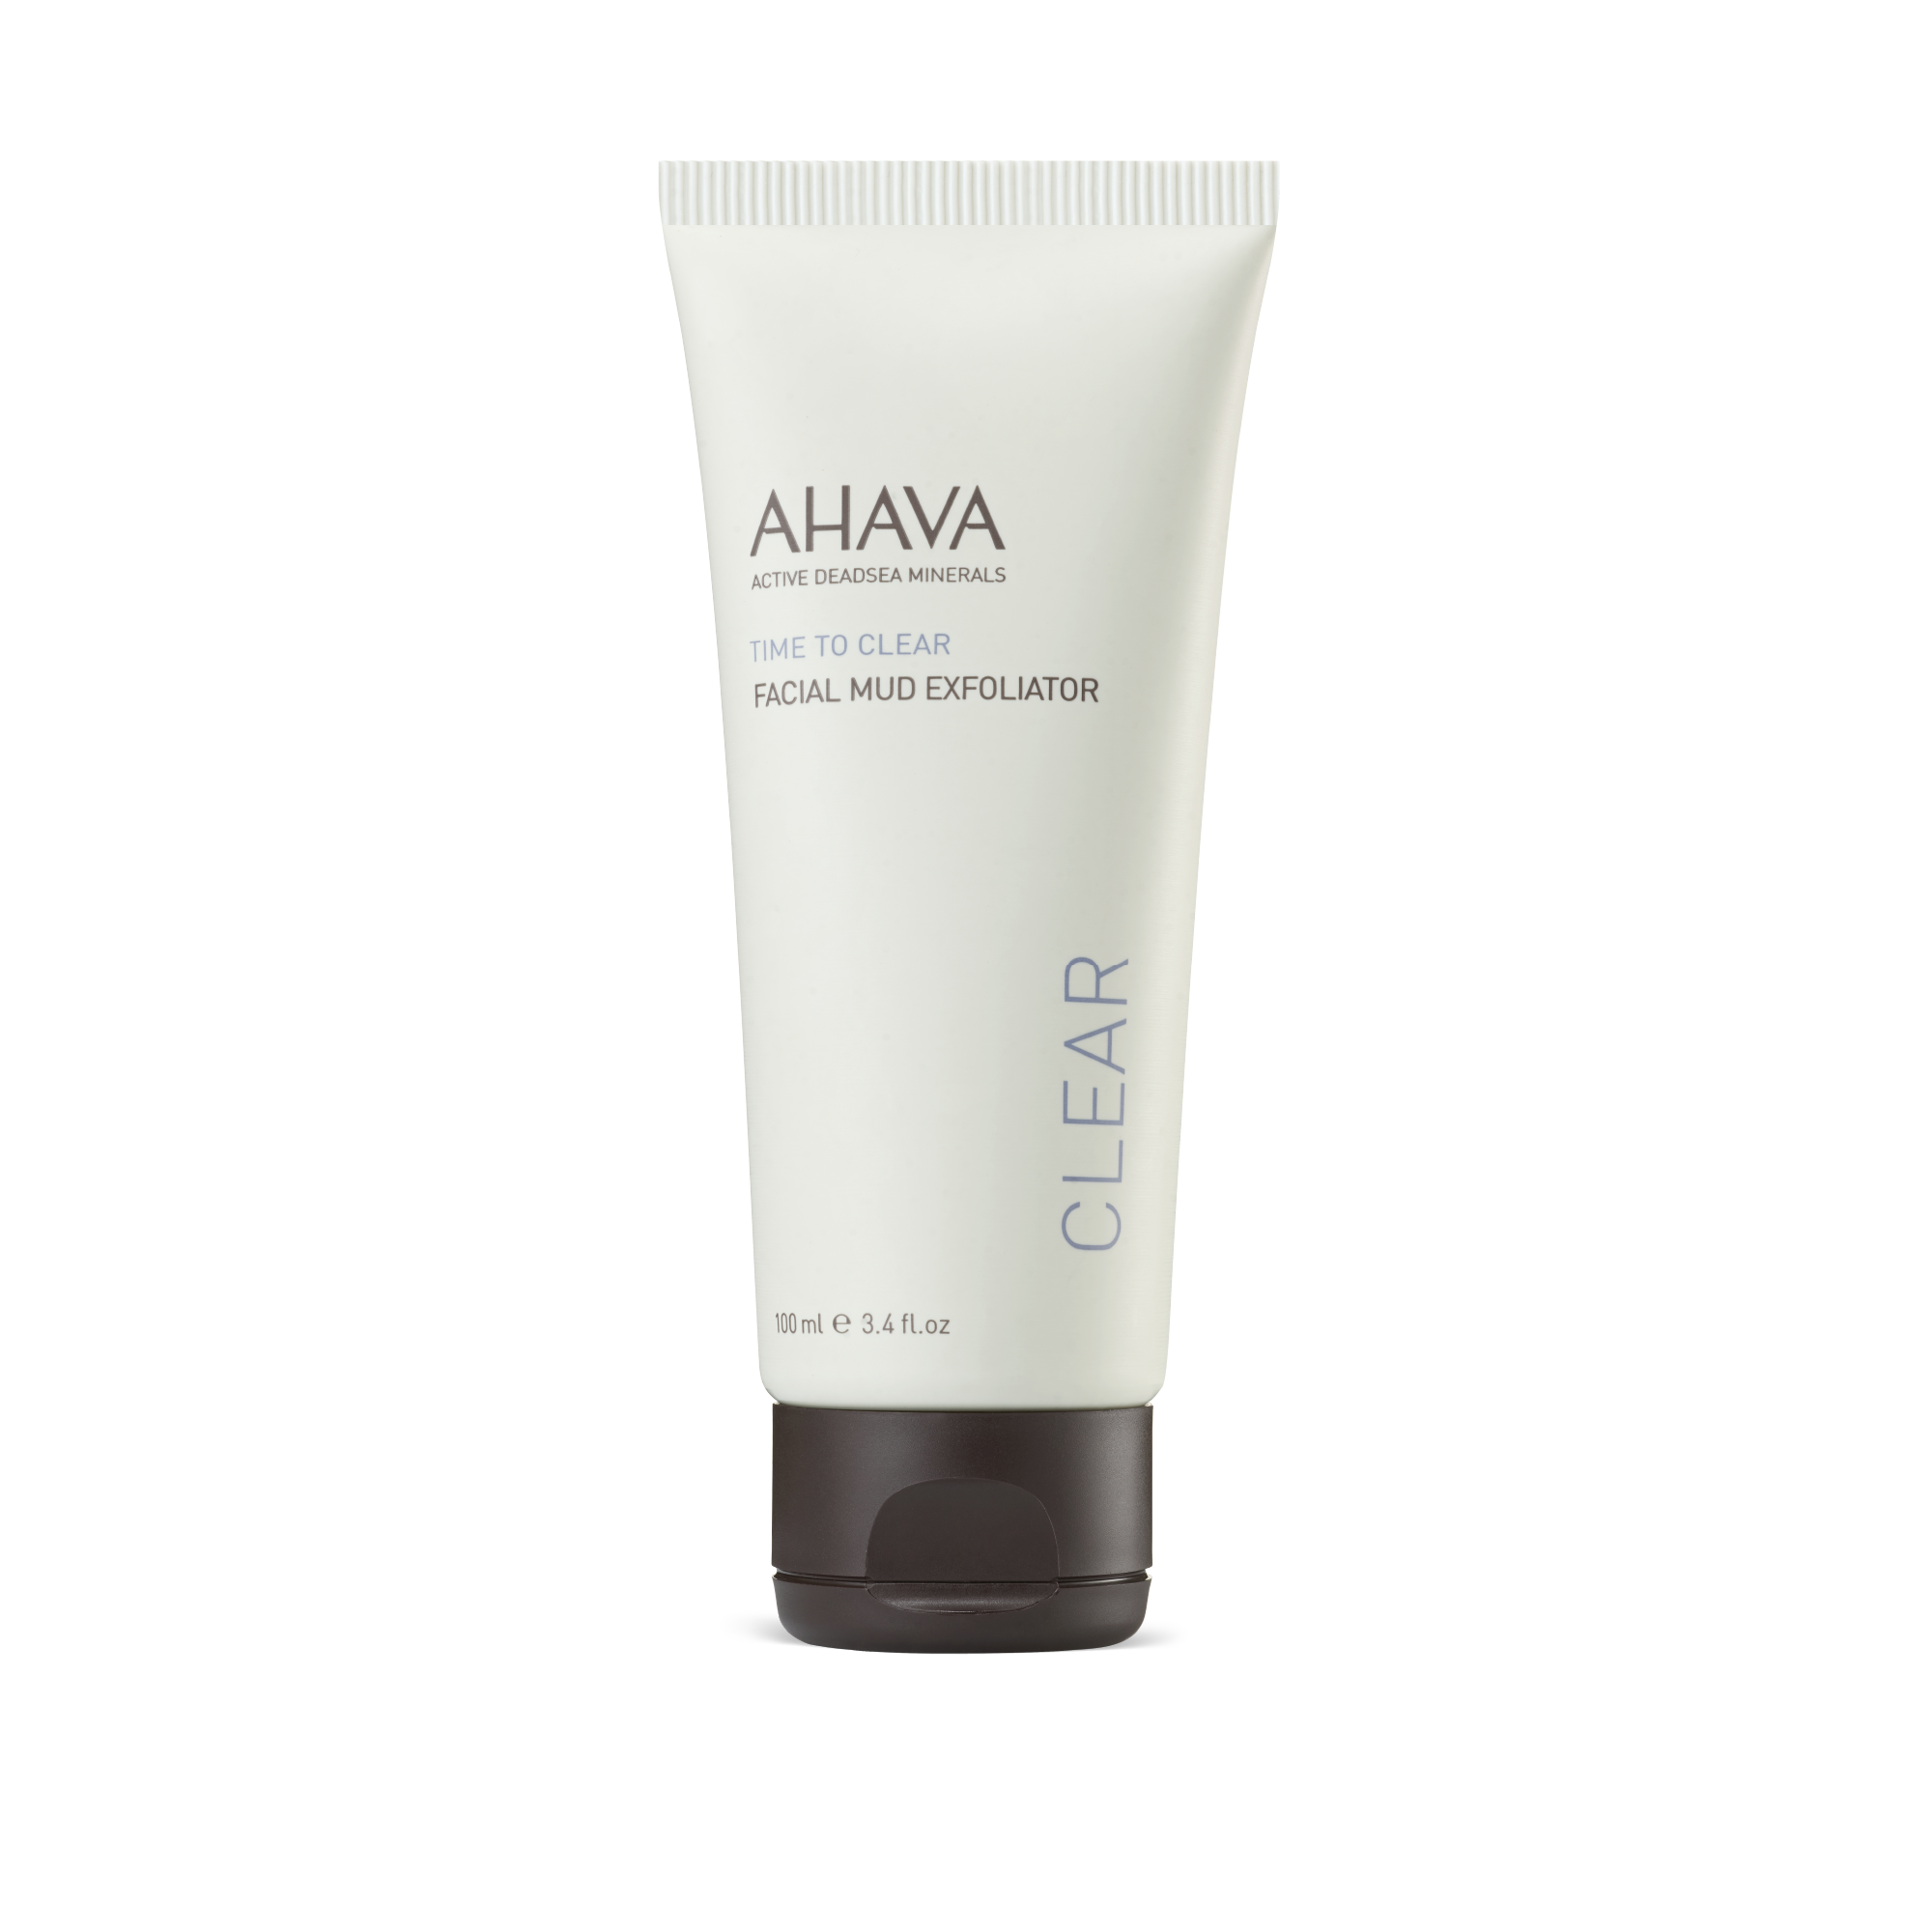 AHAVA® Facial Mud Exfoliator – AHAVA USA